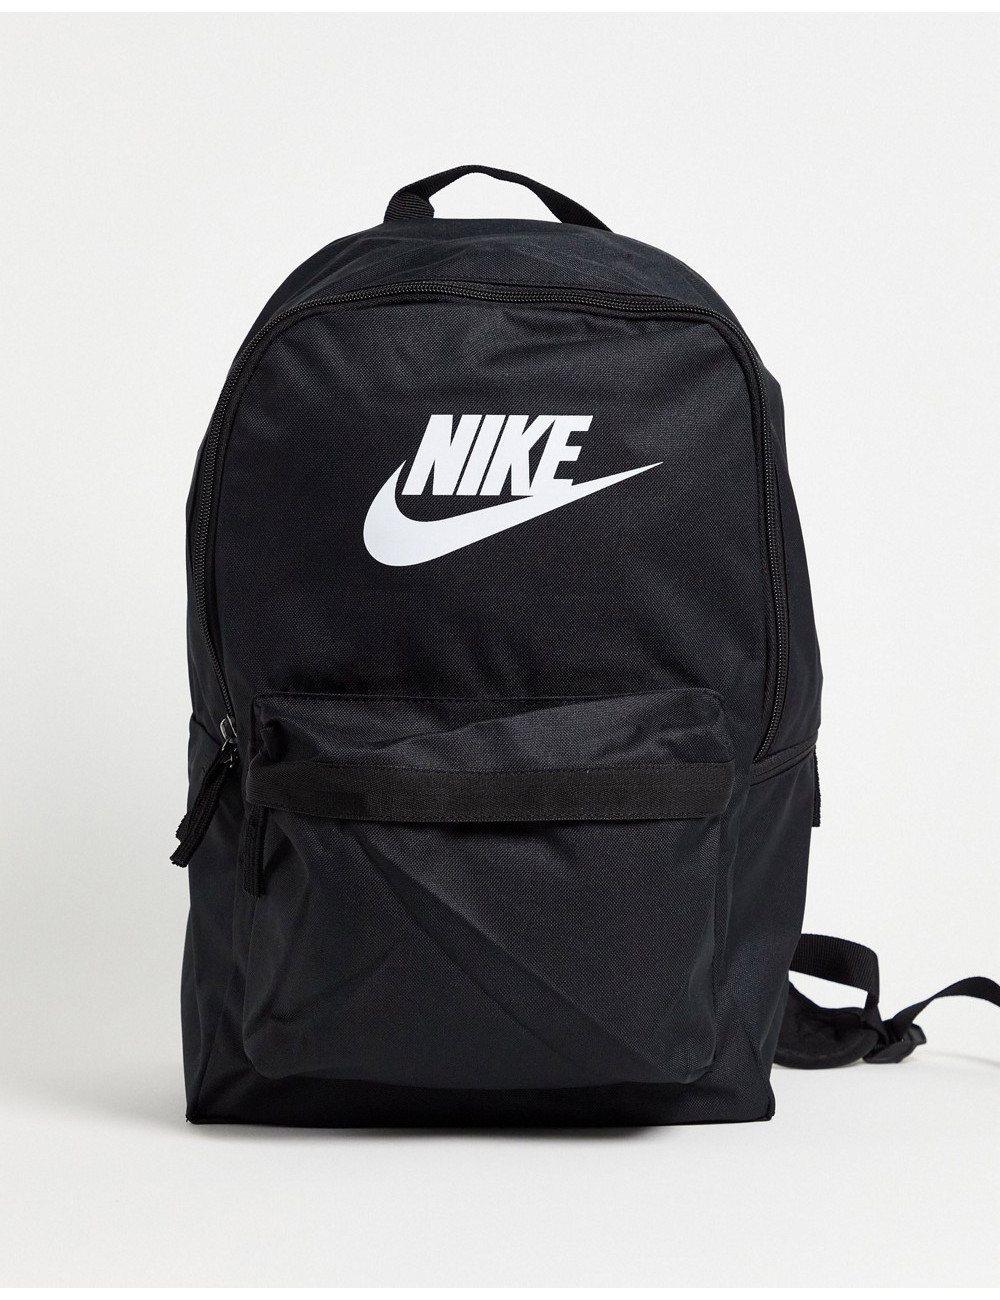 Nike heritage backpack in...